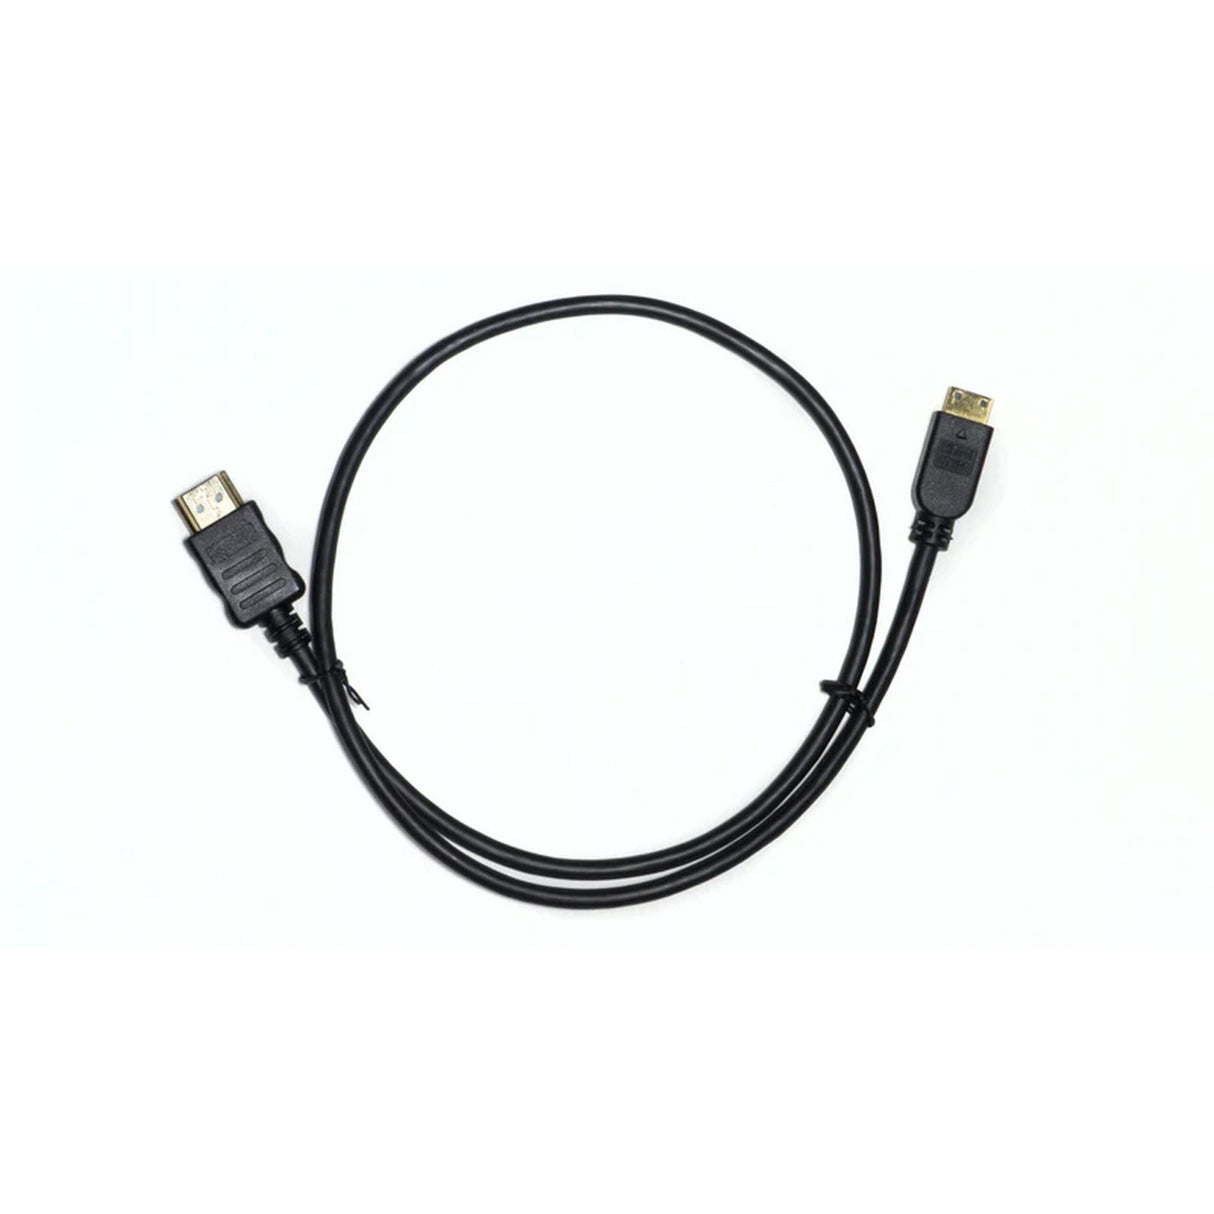 SmallHD CBL-SGL-MHDMI-HDMI-THIN-18 Mini-HDMI to HDMI Cable, 18-Inch